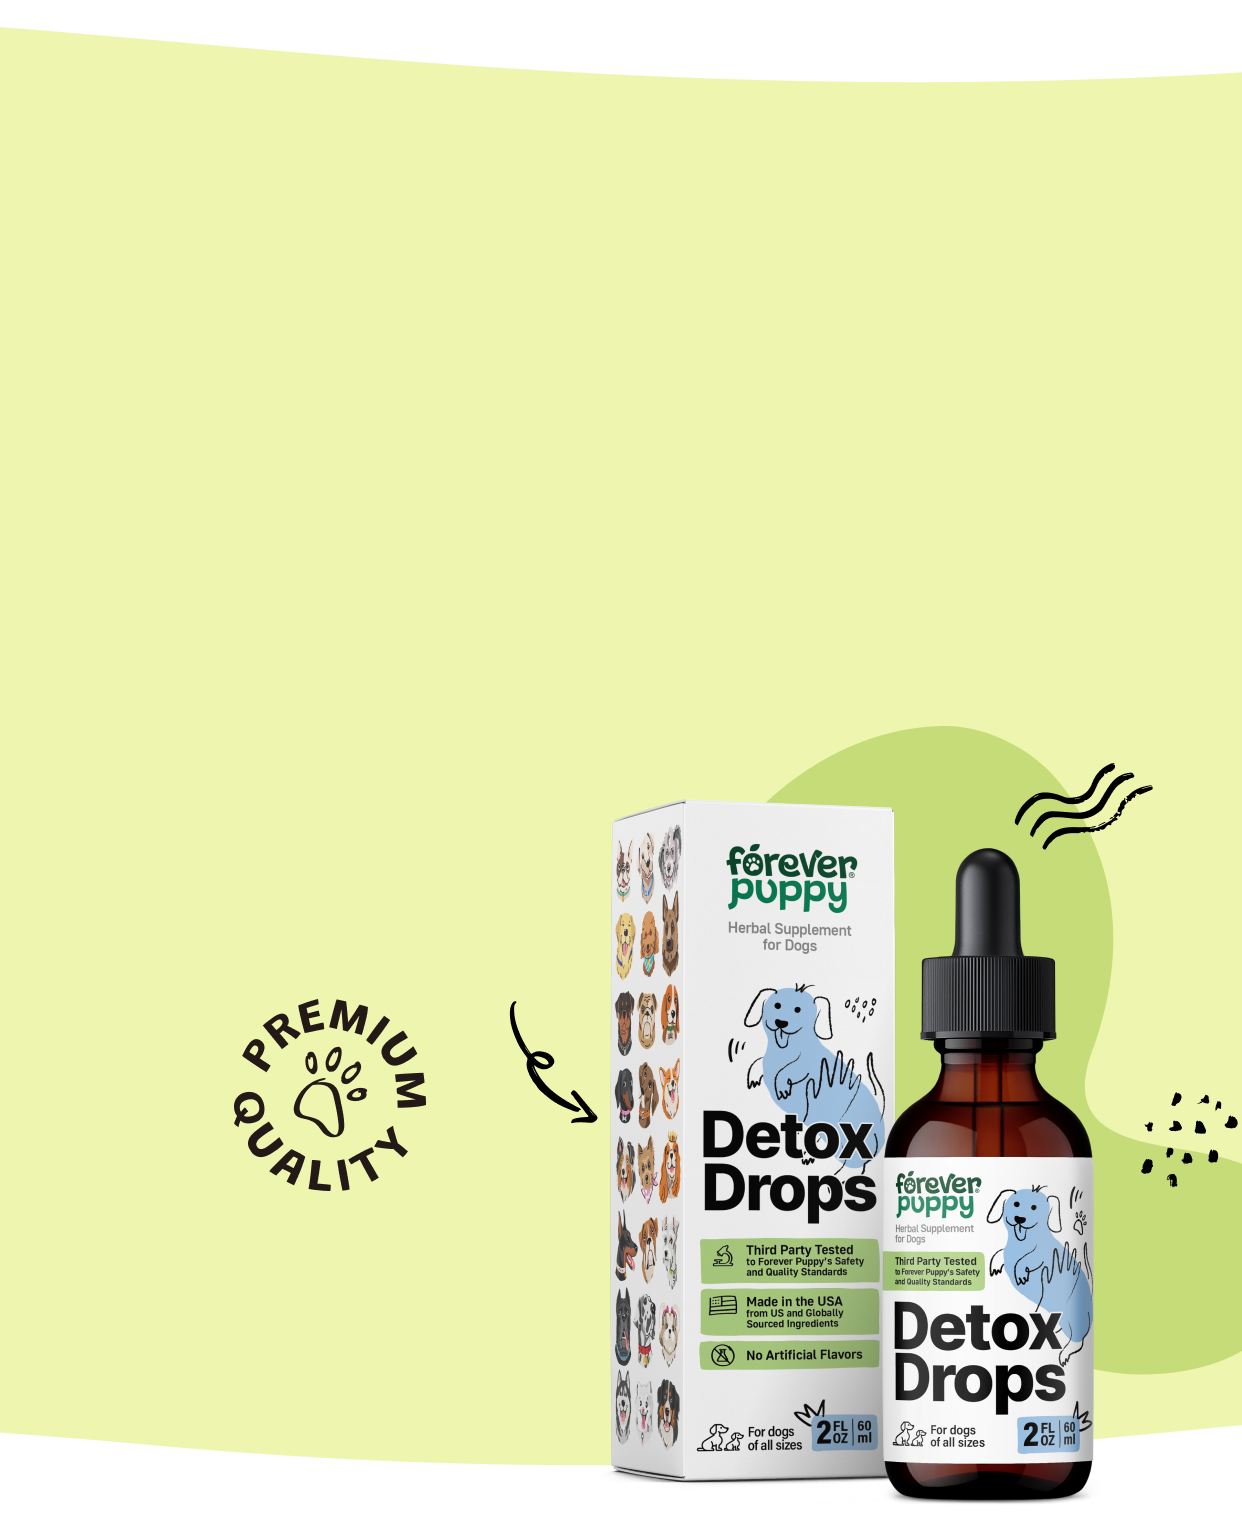 Detoxify your pet's body naturally